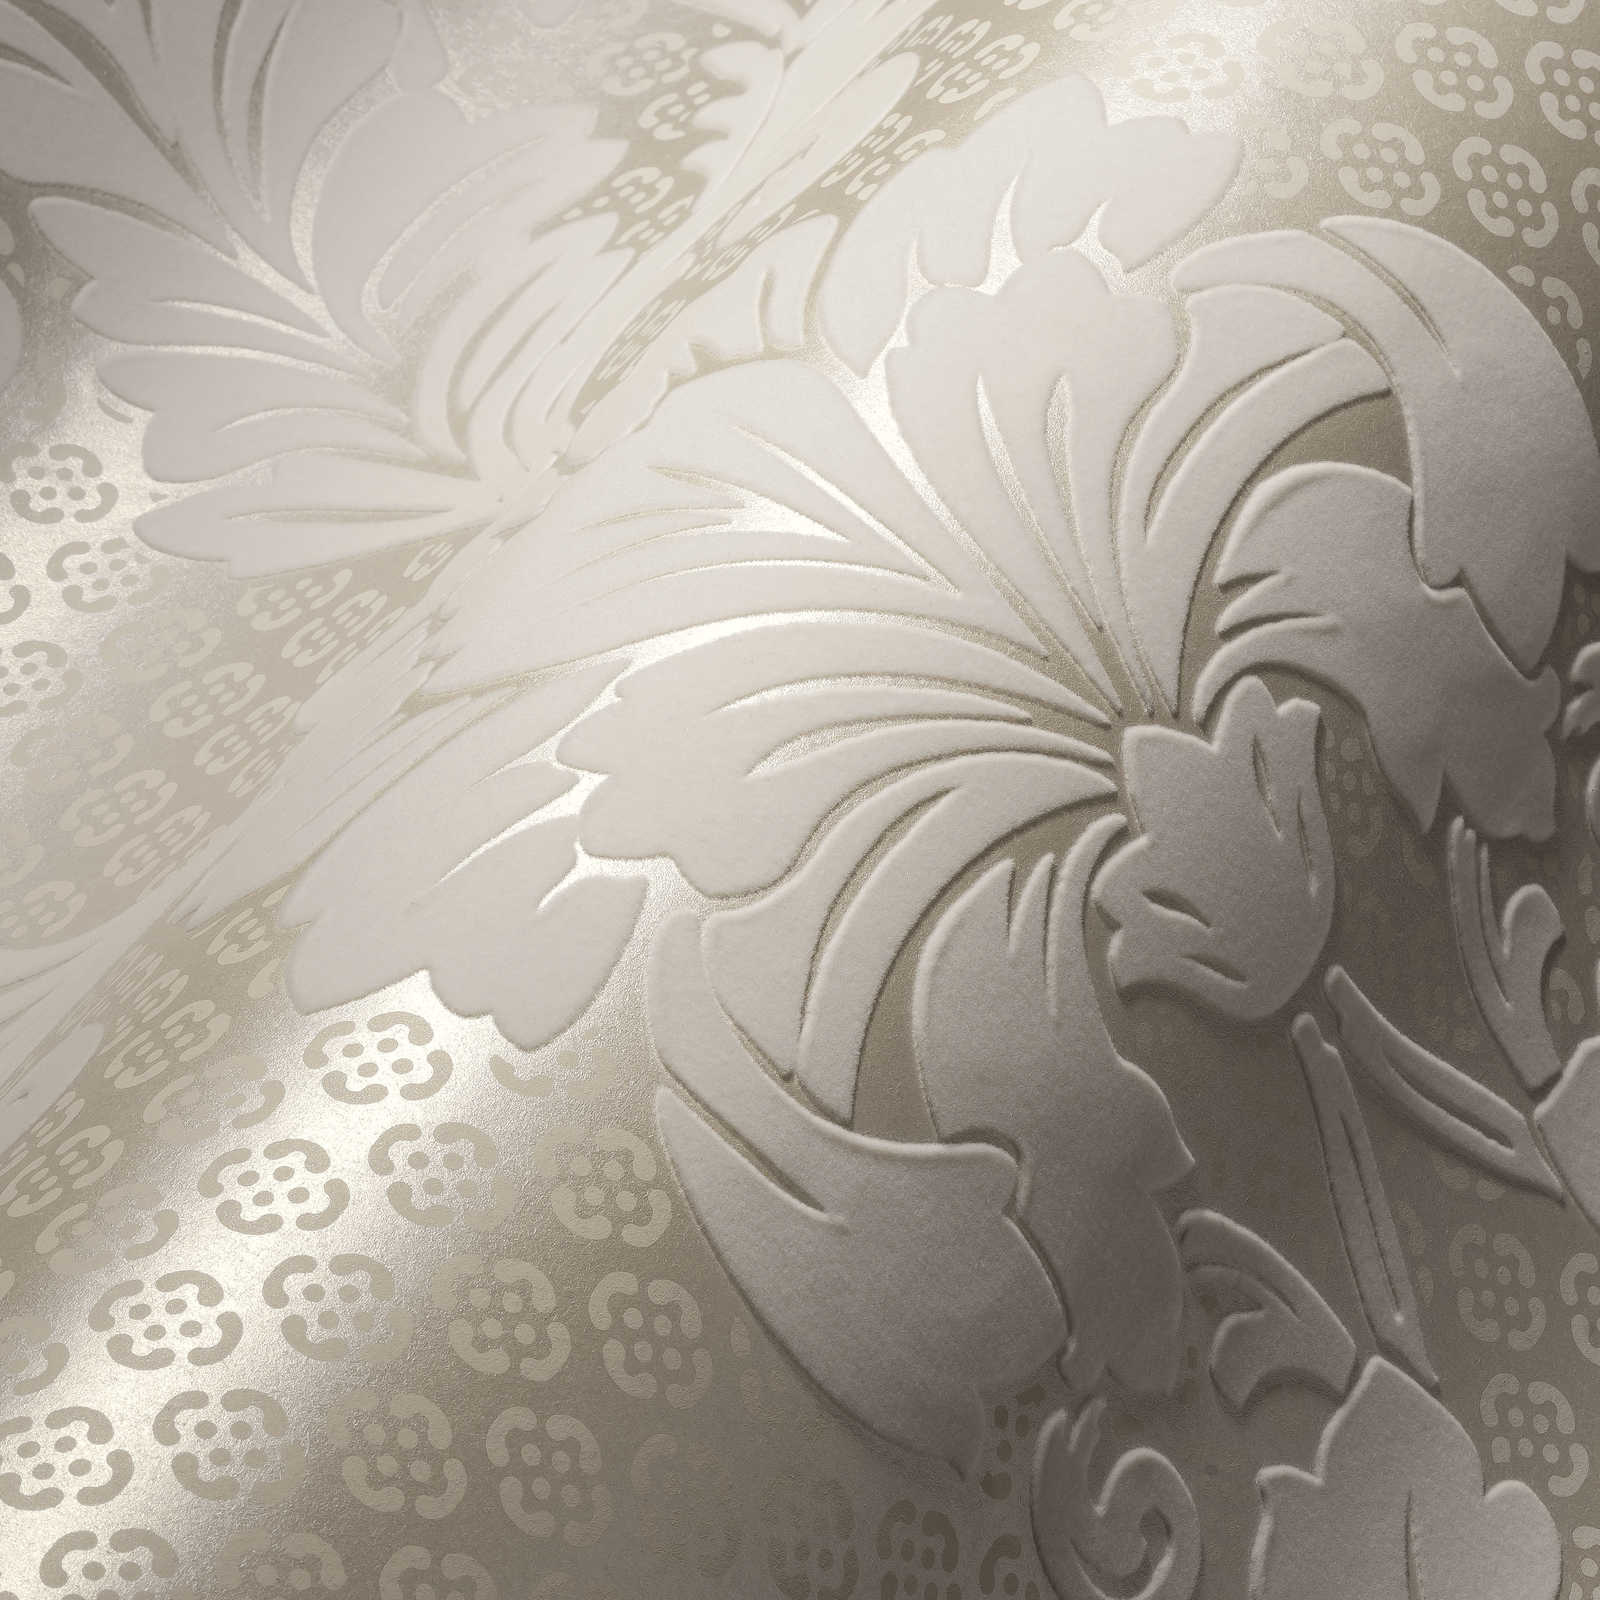             Papier peint à motifs ornementaux avec grand motif floral - crème, bronze
        